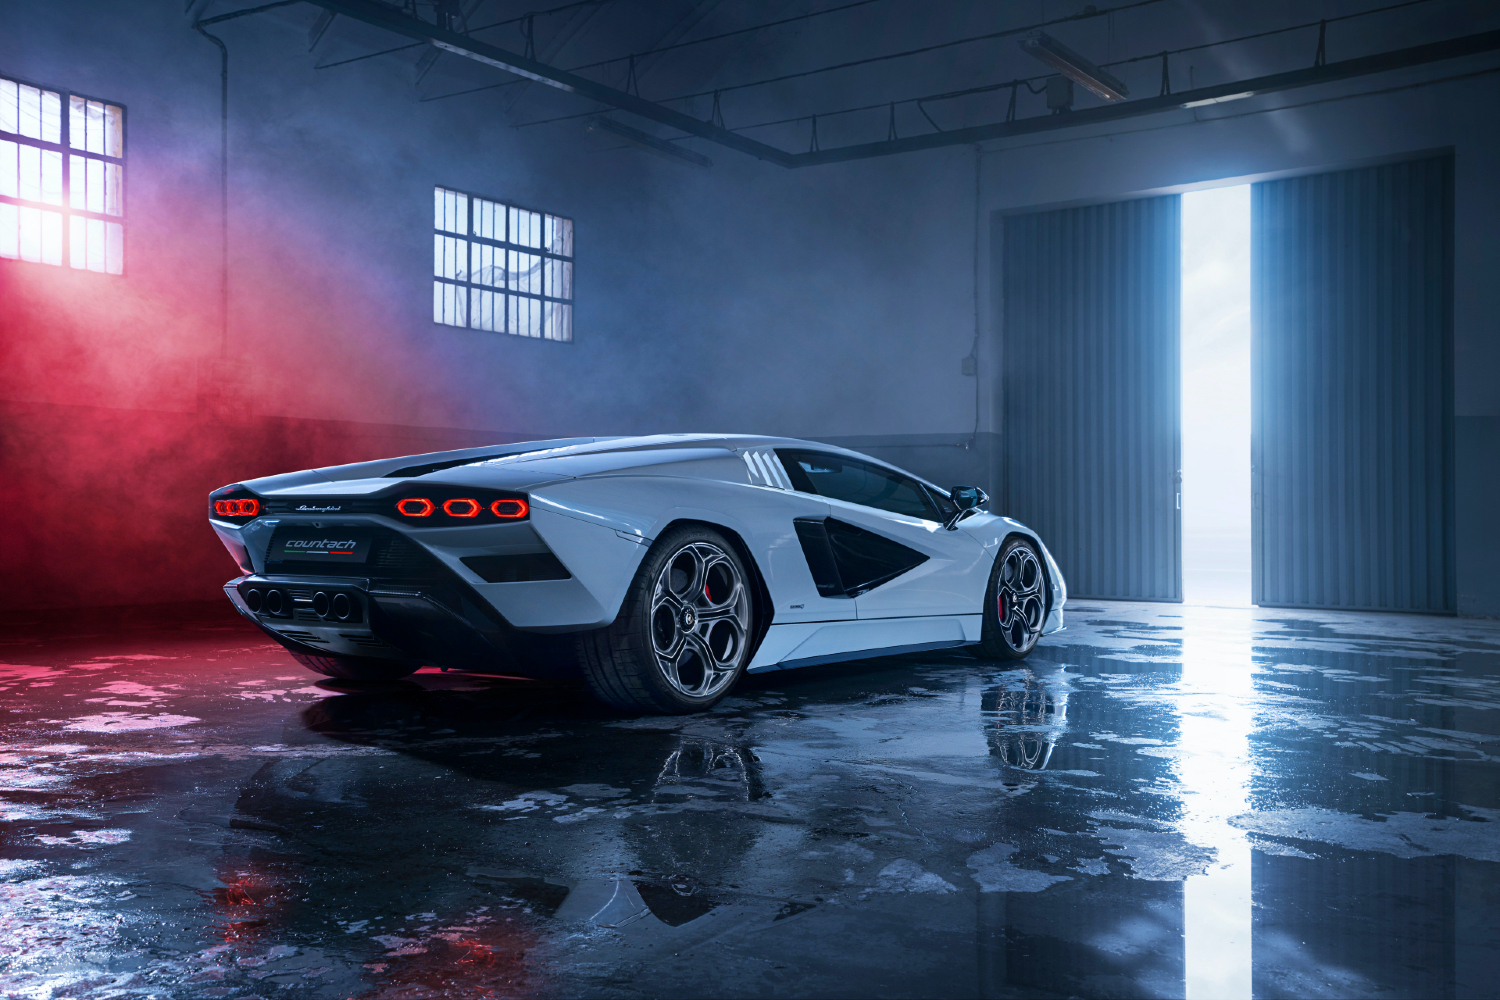 Với thiết kế ngoại hình đặc biệt và một động cơ vô cùng mạnh mẽ, Lamborghini Countach không chỉ là một chiếc siêu xe, mà còn là một tác phẩm nghệ thuật thực sự. Hãy xem những hình ảnh của nó để cảm nhận được sự độc đáo và thú vị của dòng xe này.